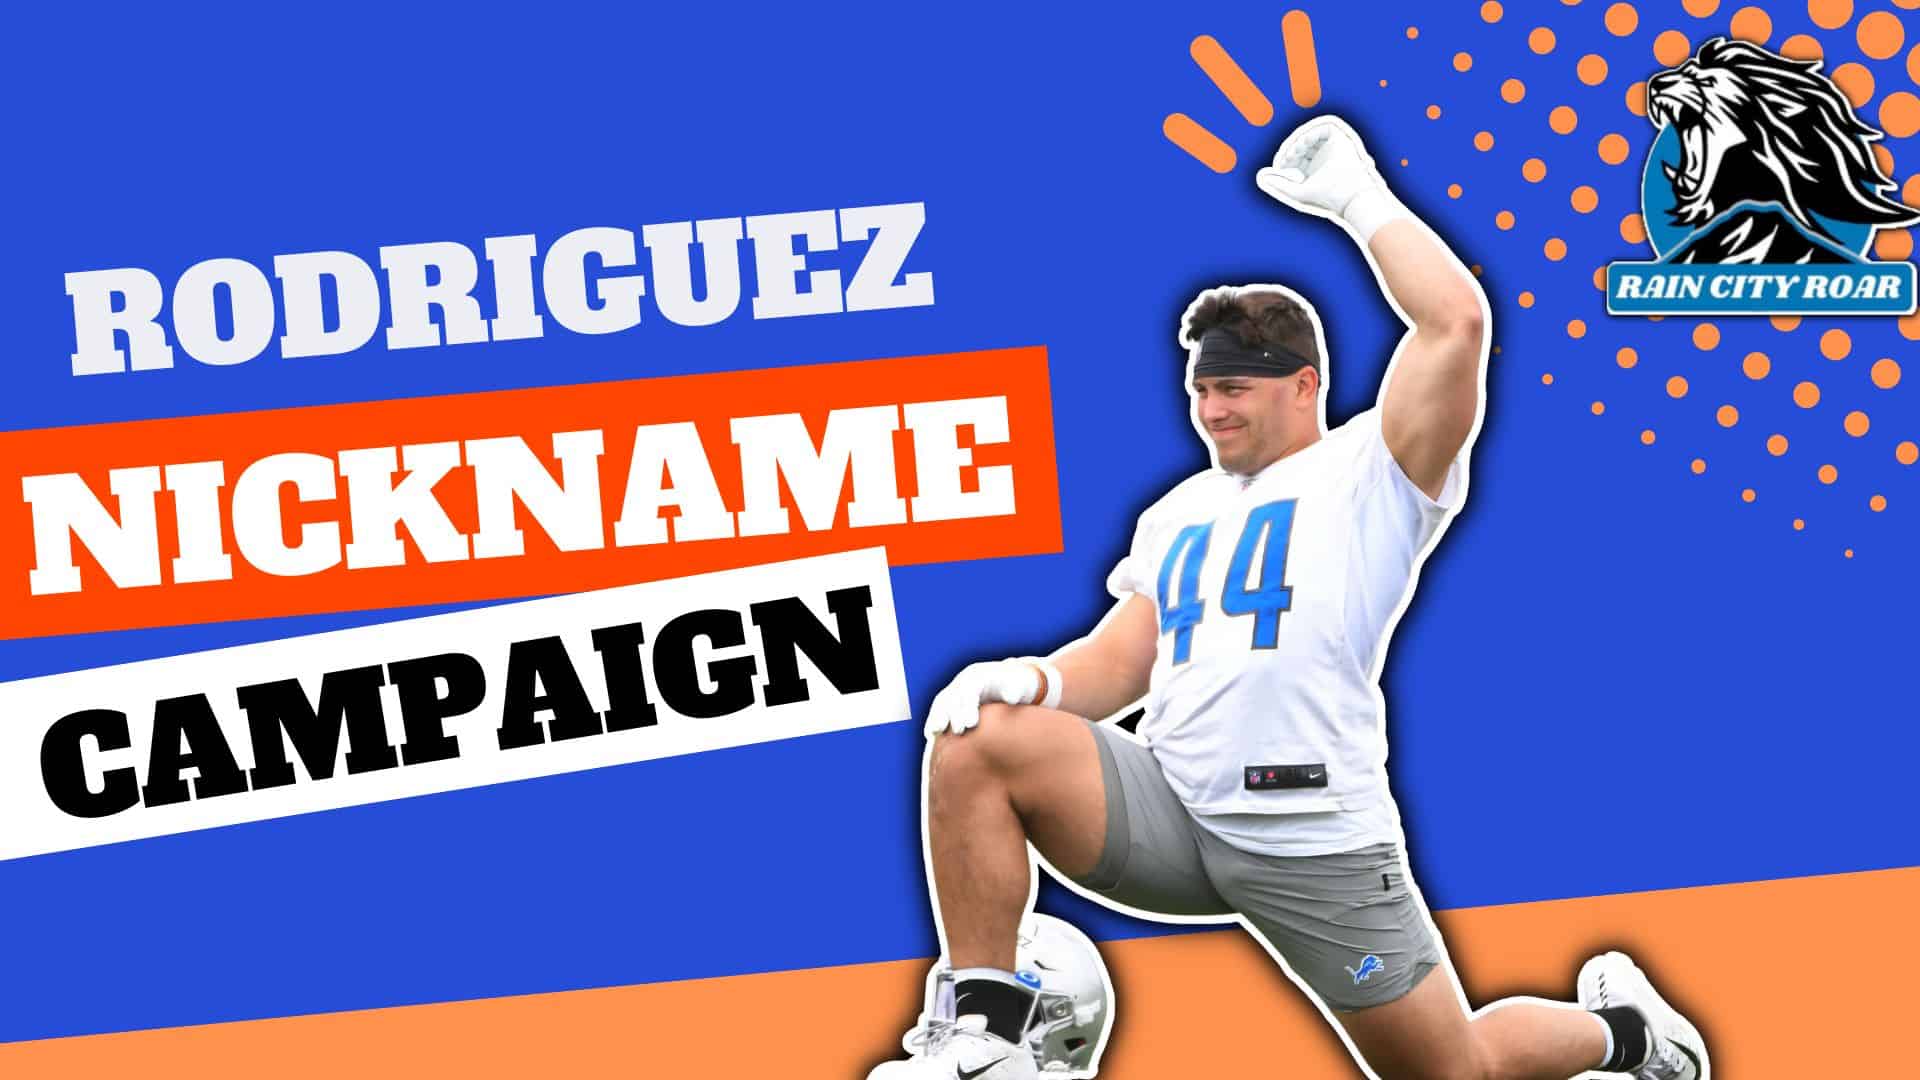 Rodrigo Nickname Campaign